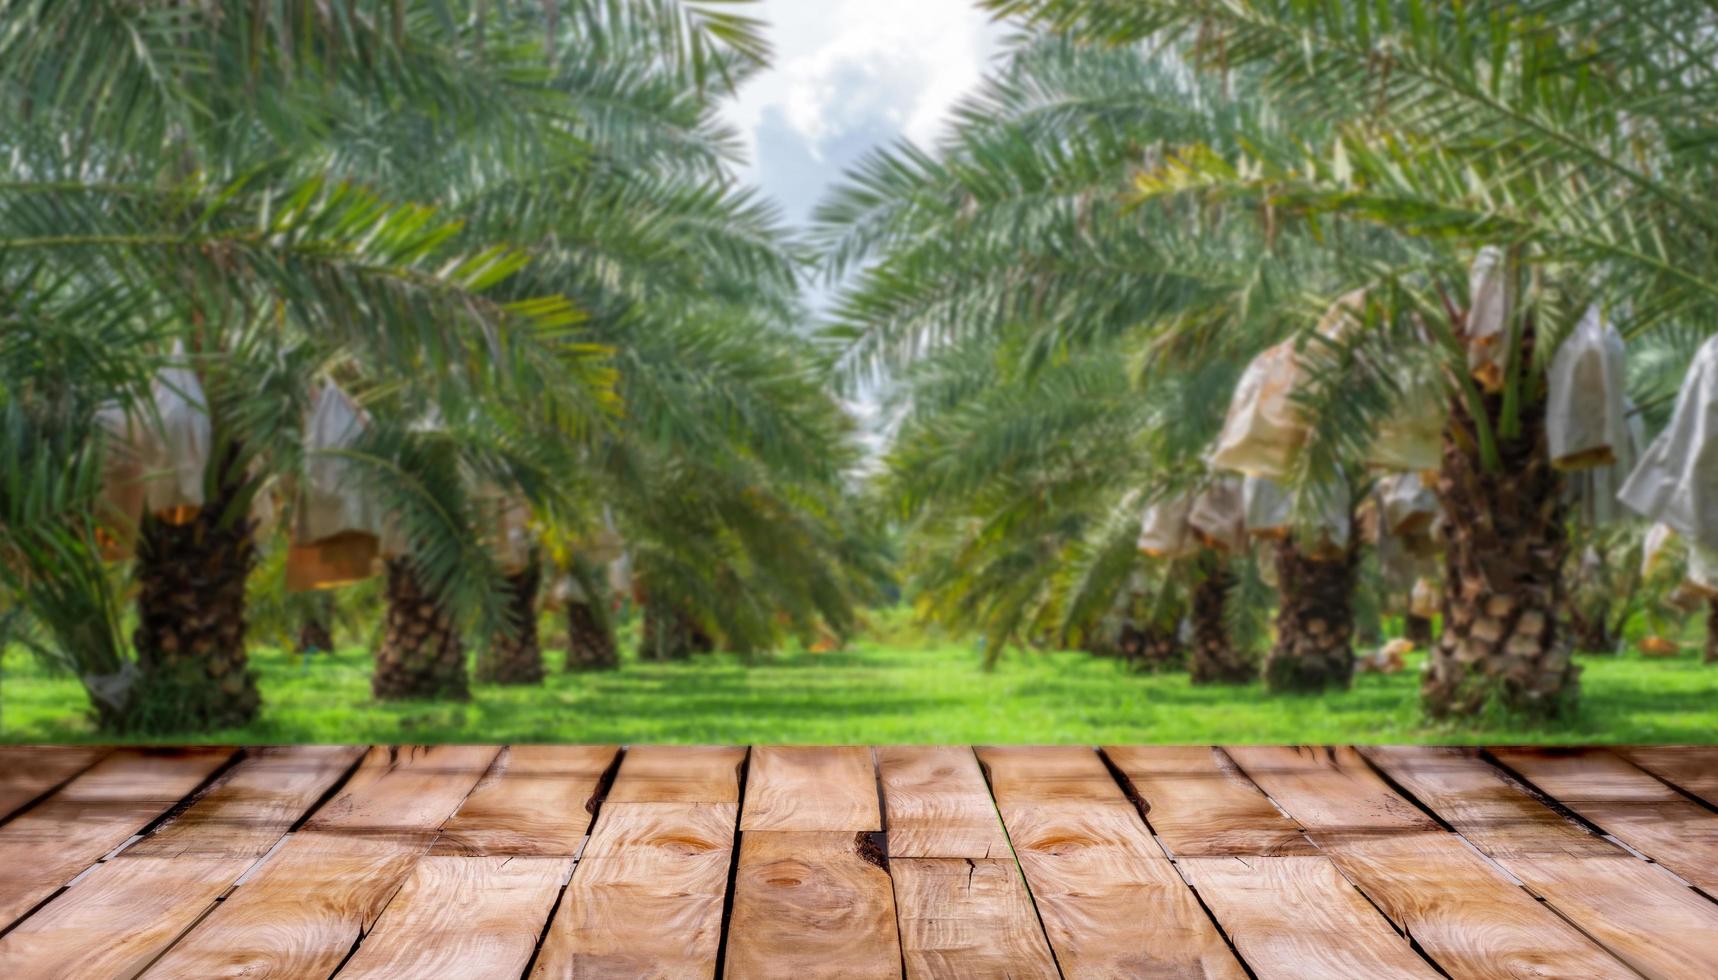 belo piso de madeira e fundo de natureza de jardim de palmeiras datas barhi desfocadas, fundo de vitrine de produtos agrícolas, jardim de palmeiras datas barhi e conceito de comida saudável foto